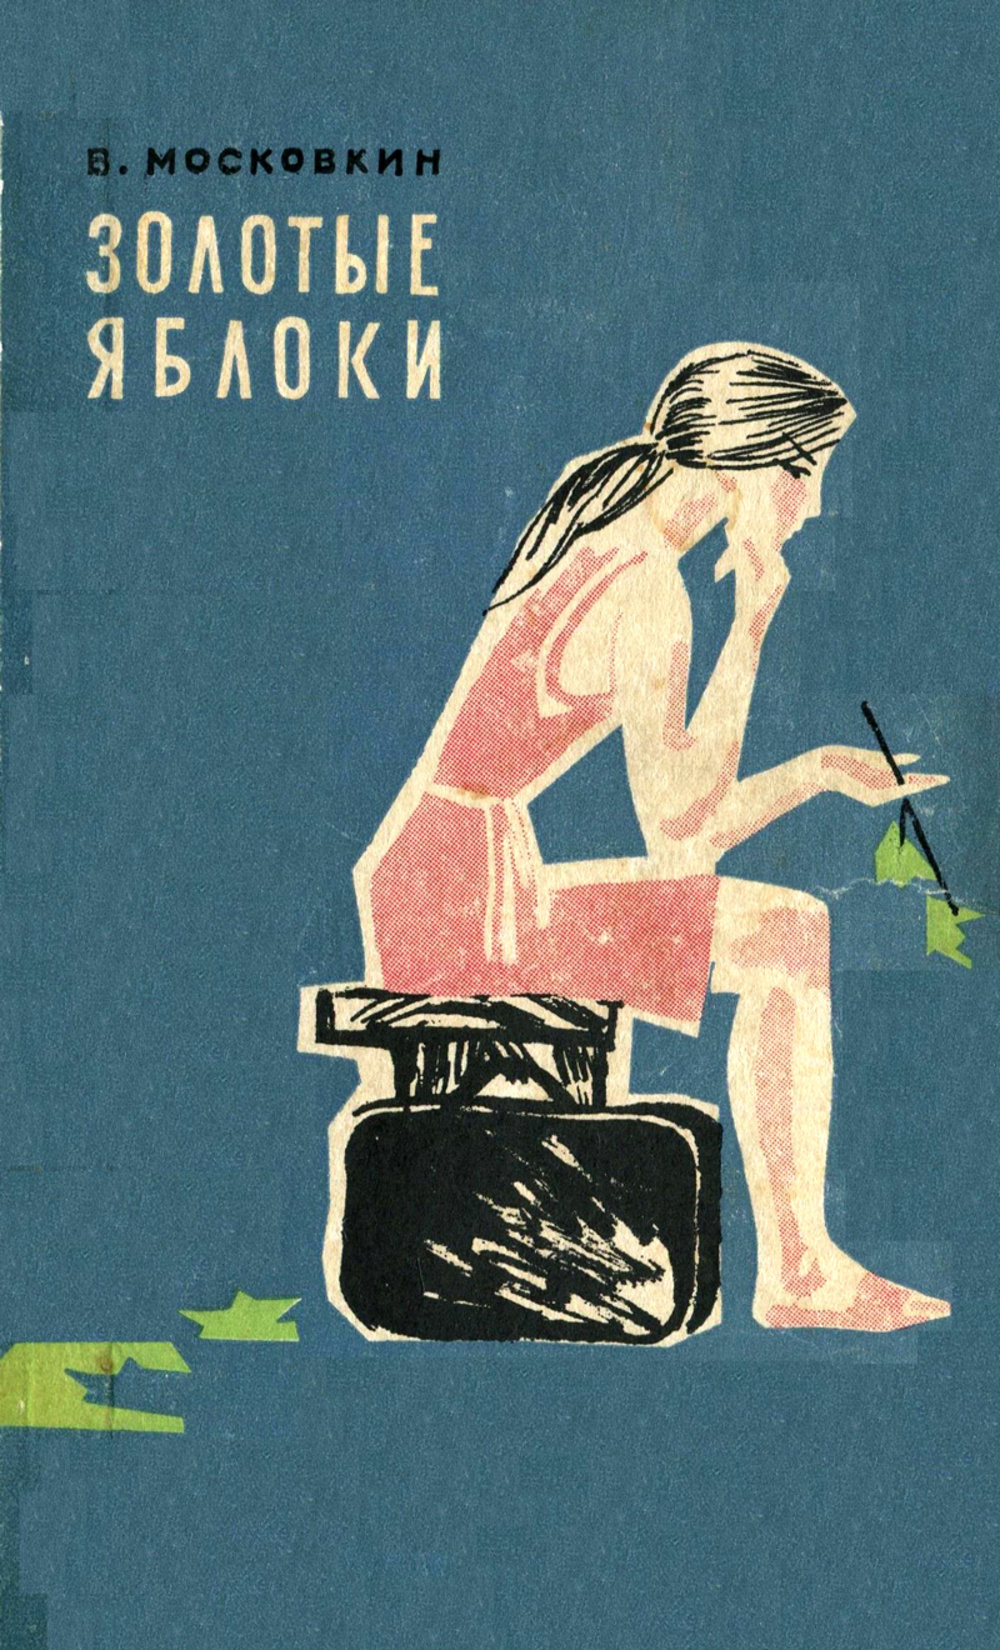 Советская книга рассказов